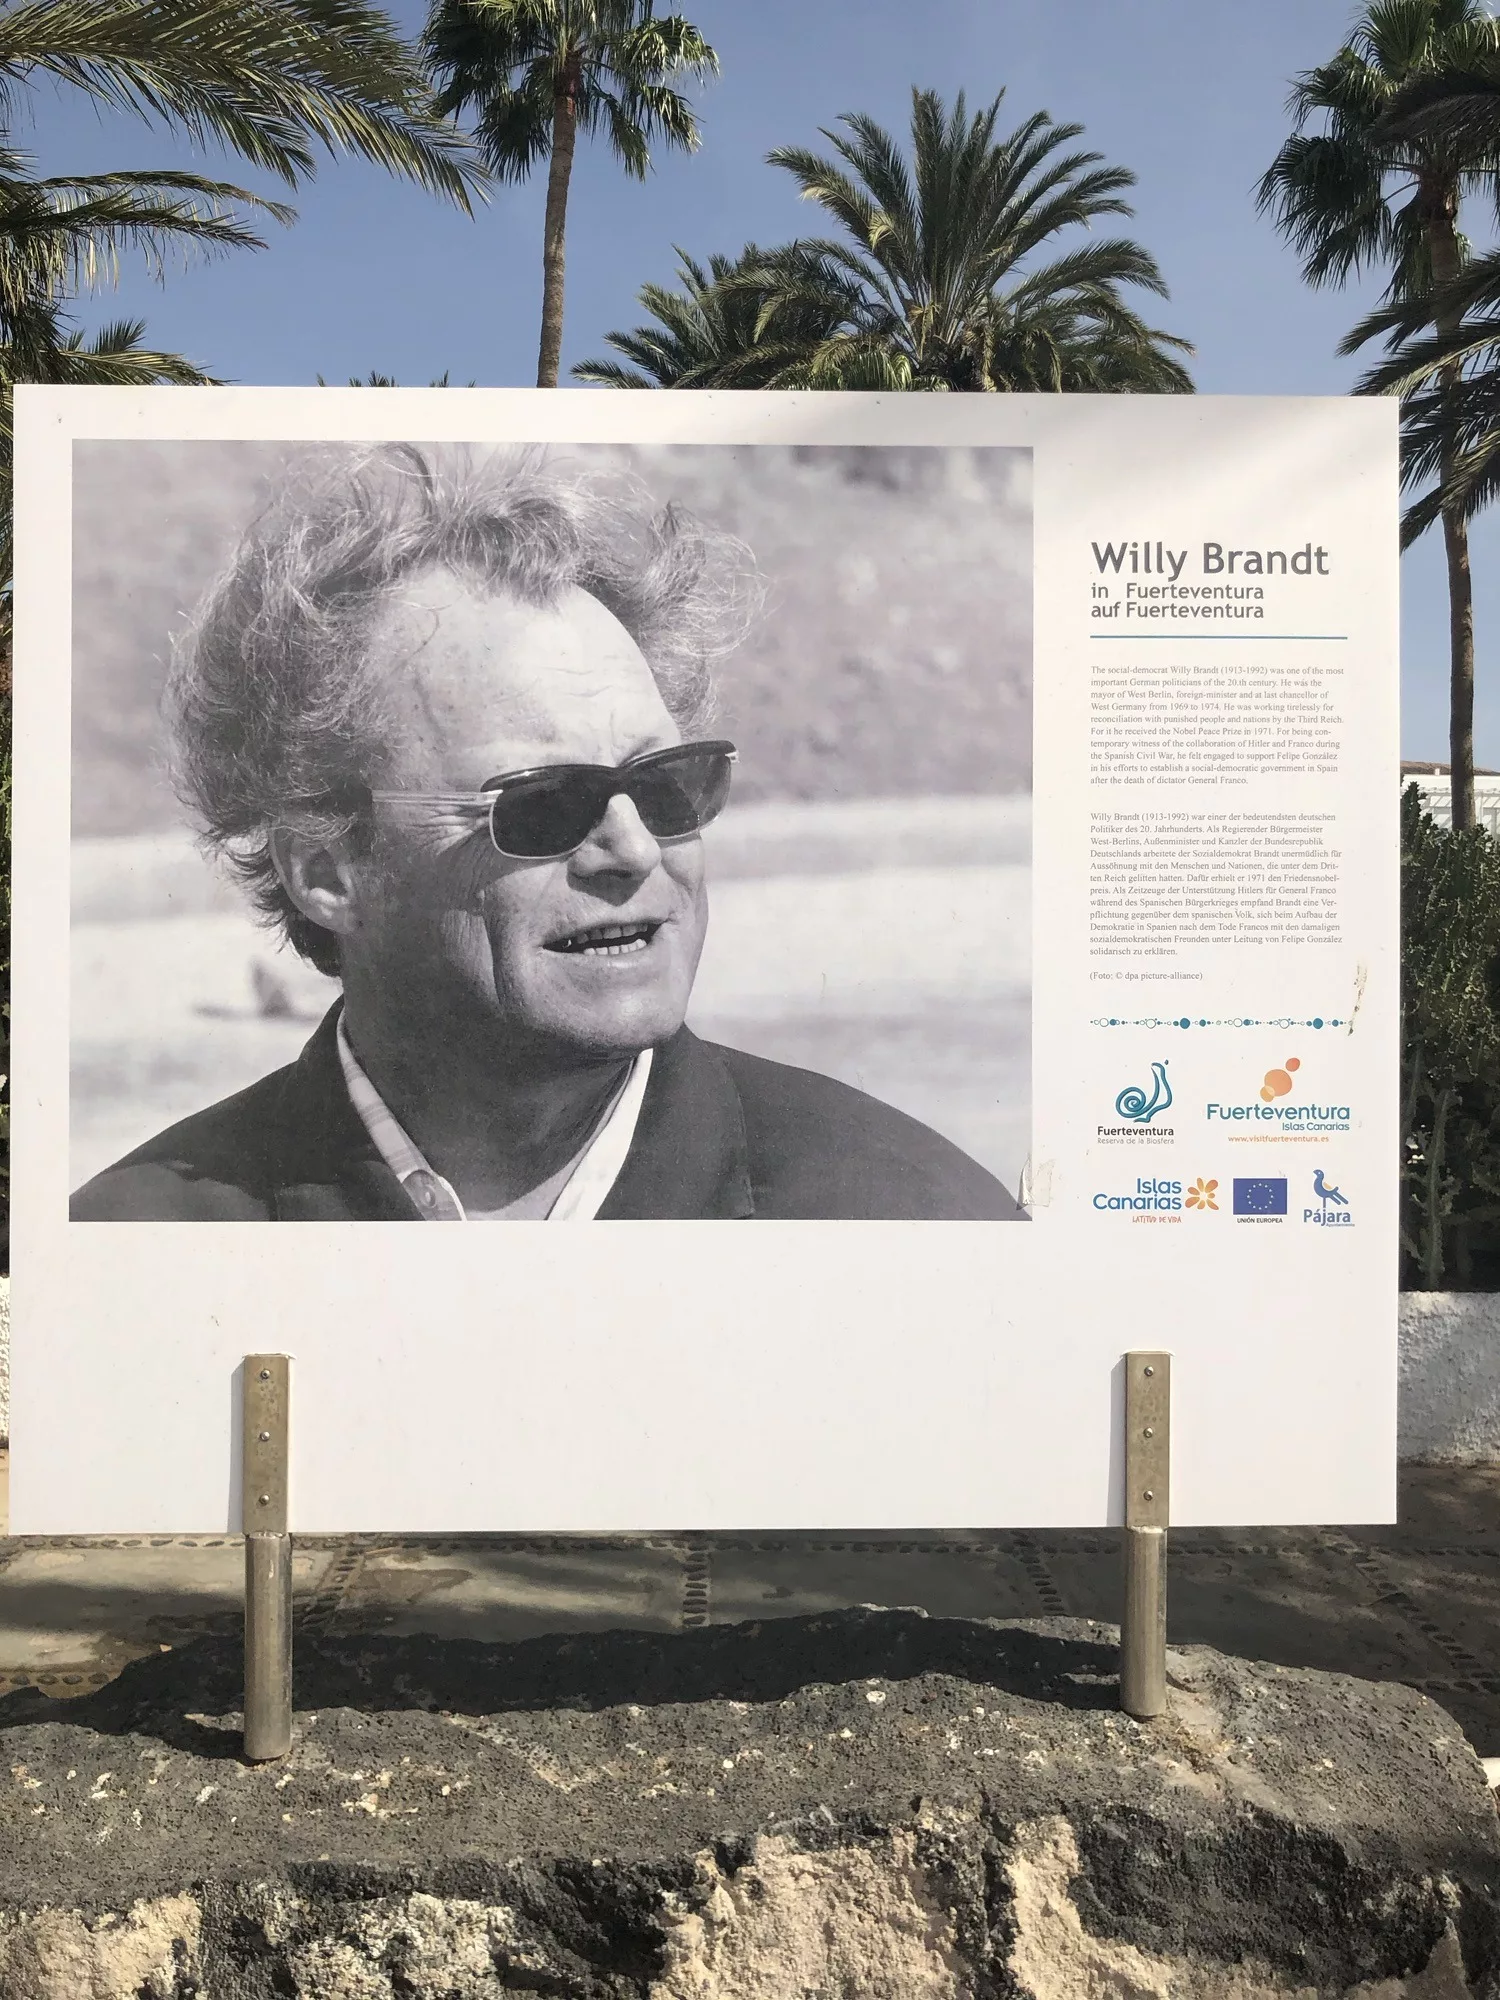 Am Strand von Jandia ein plakatgroßes Schild über Willy Brand auf Fuerteventura.